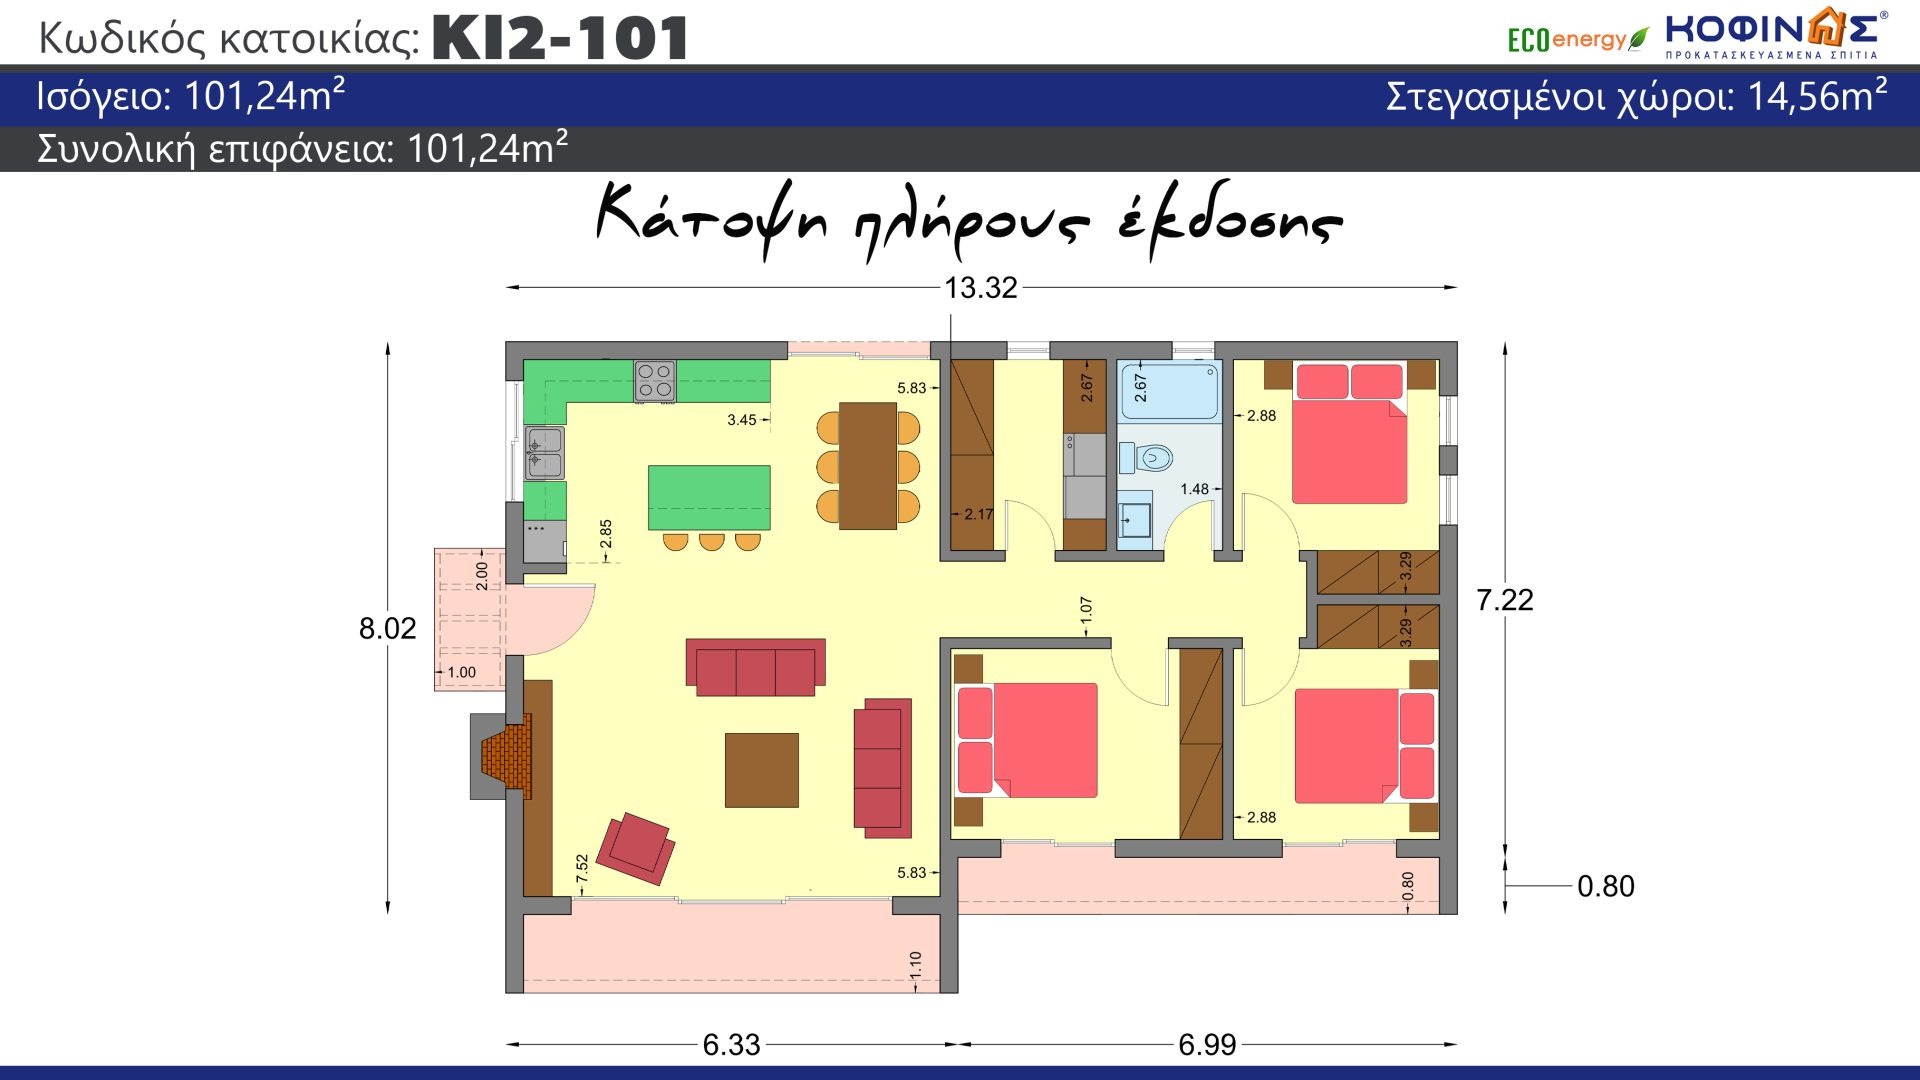 Ισόγεια Κατοικία KI2-101 συνολικής επιφάνειας 101,24τ.μ., στεγασμένοι χώροι 14,56τ.μ.